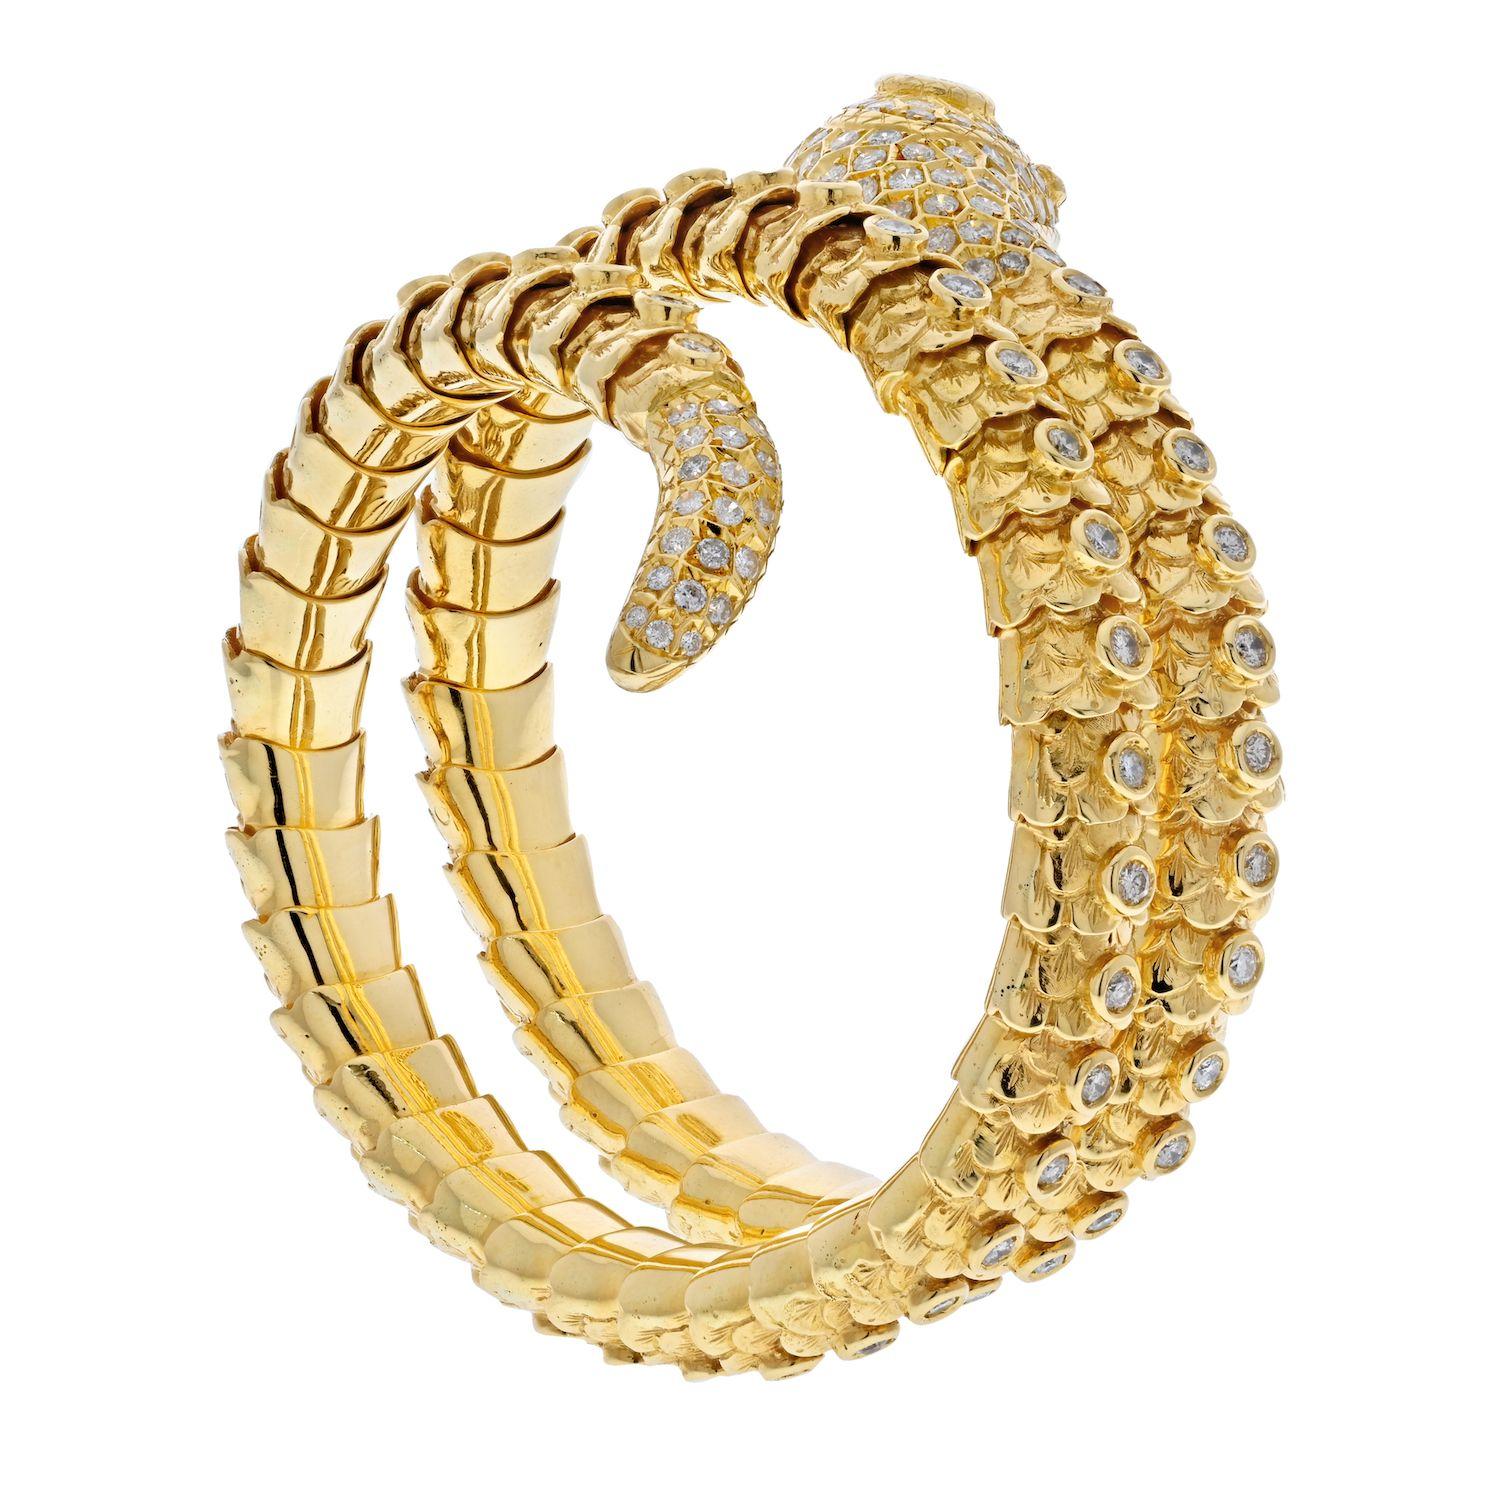 Bracelet en or jaune 18 carats serpent entouré de diamants.

Il s'agit d'un magnifique bracelet enveloppant serpent en or jaune 18 carats. Ce serpent a une personnalité mignonne avec une petite langue espiègle qui sort de sa bouche, des yeux verts